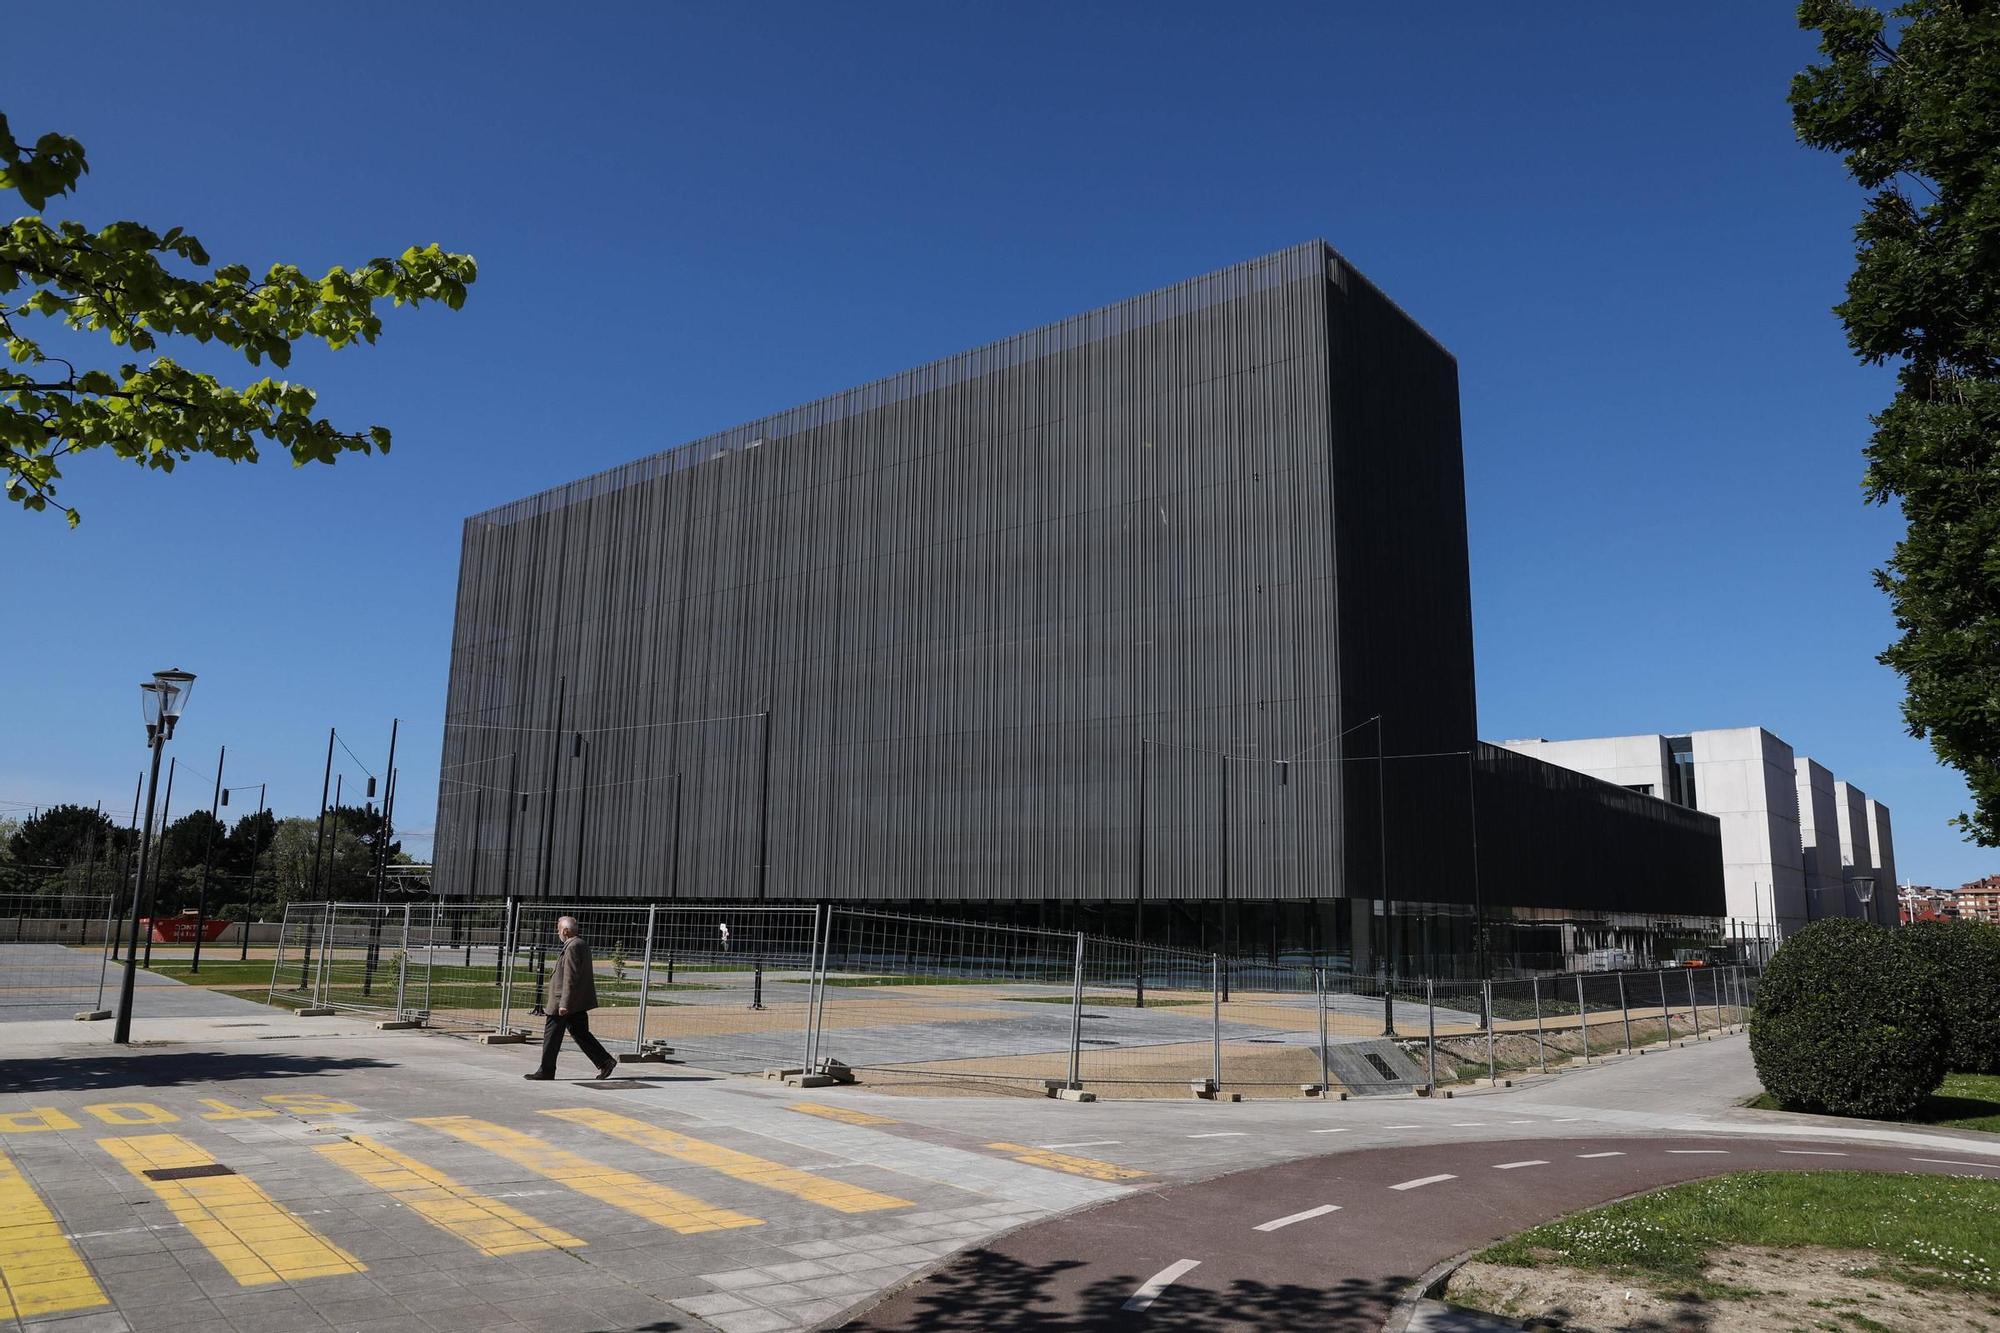 Así ha quedado la nueva comisaría de la Policía Local de Gijón (en imágenes)